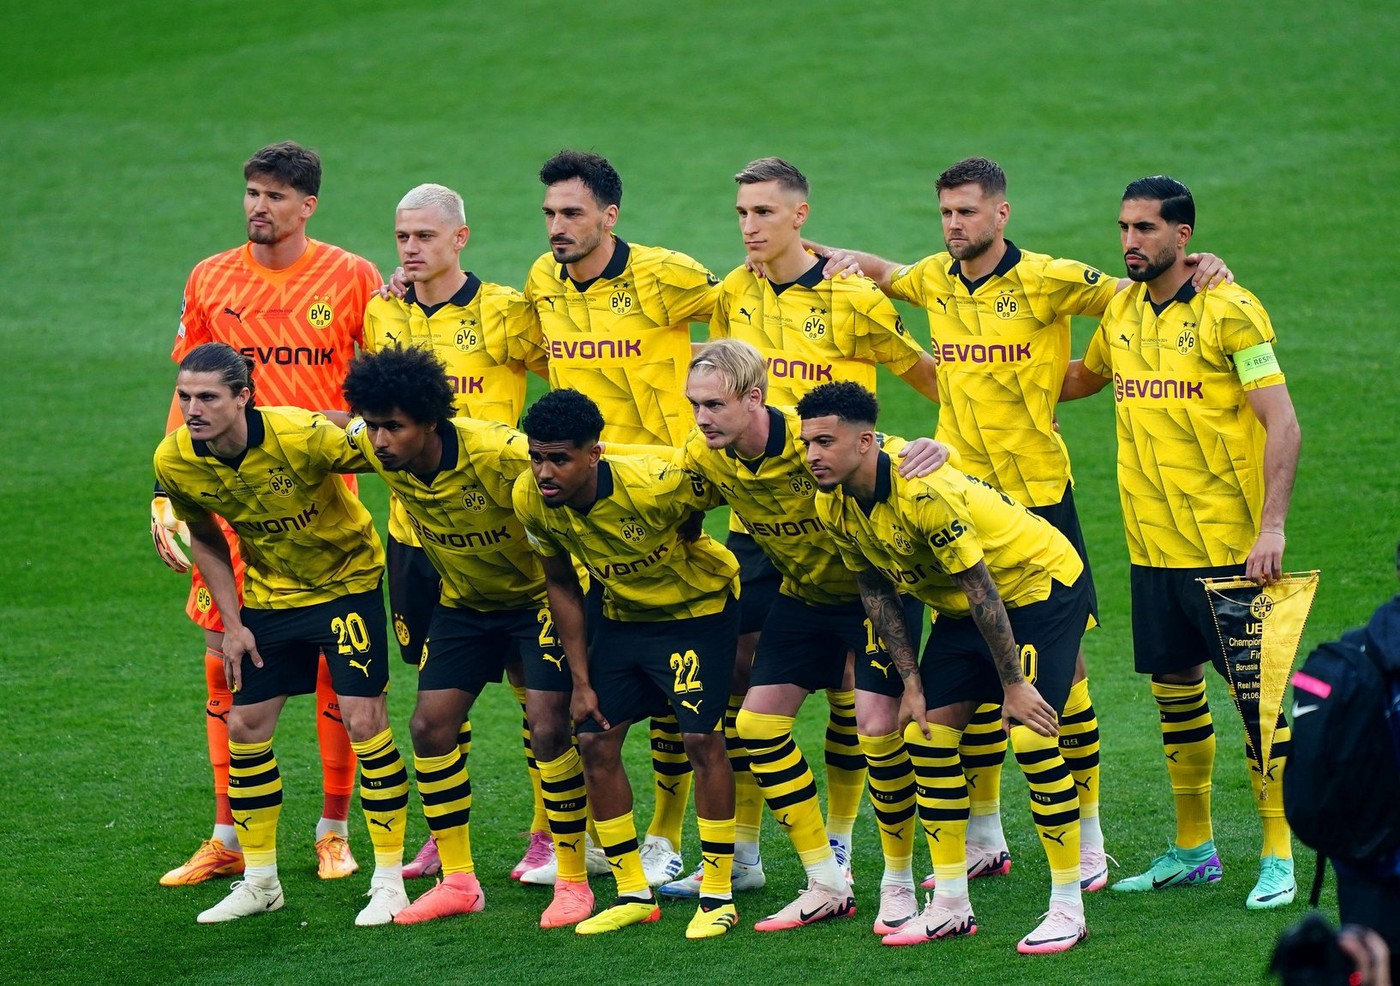 Ce surpriză! Borussia Dortmund a fost surclasată de o echipă care valorează de 52 de ori mai puțin decât nemții